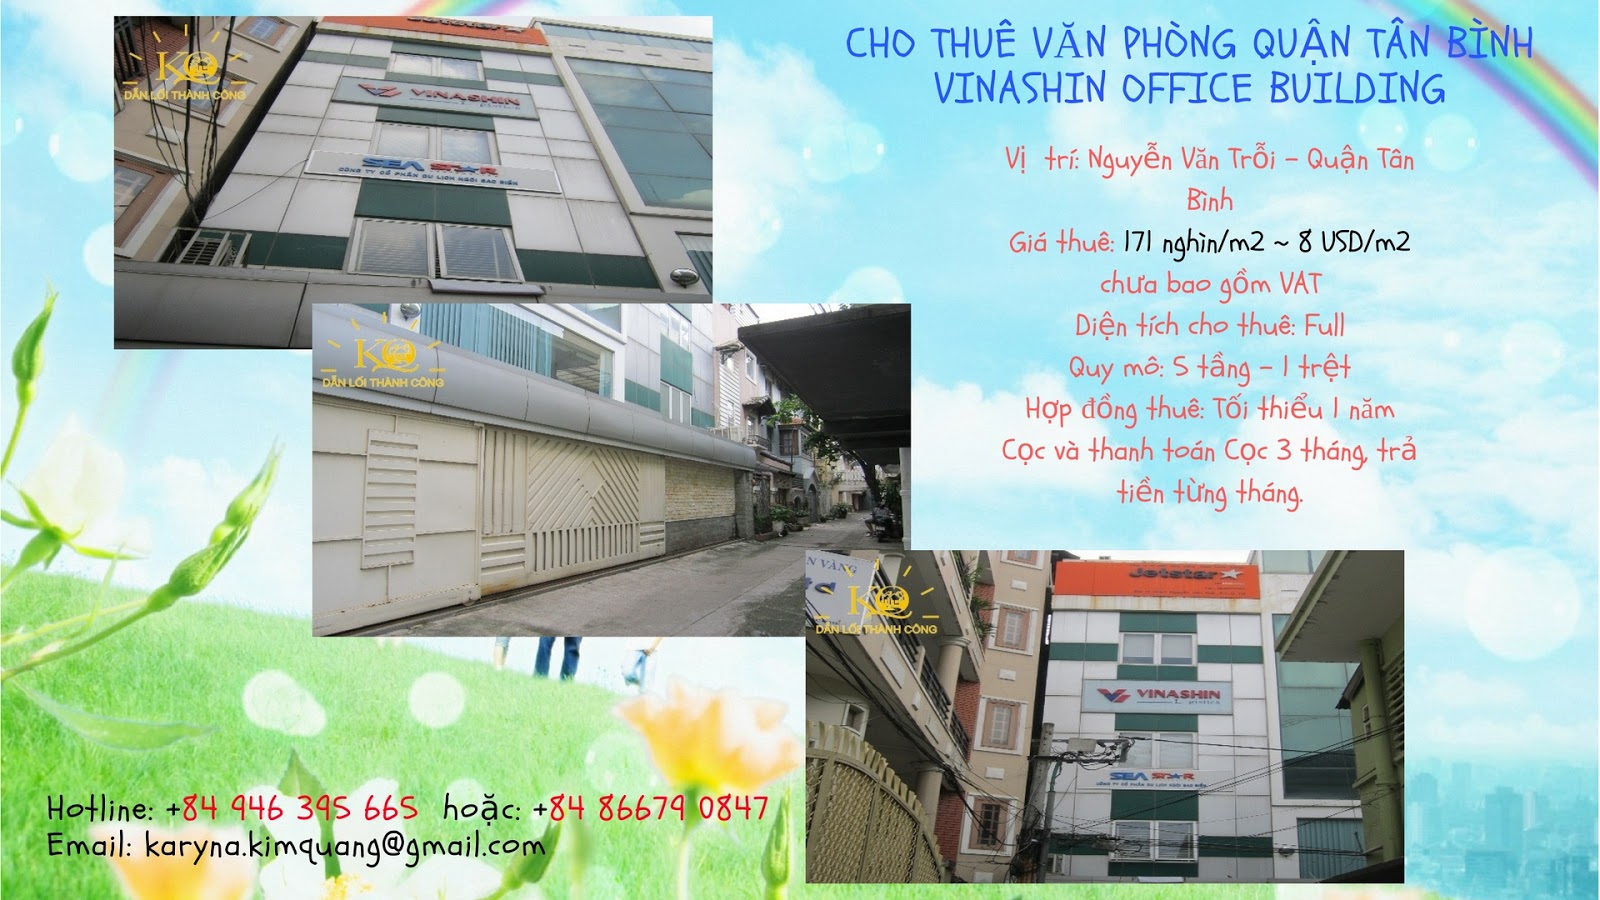 Cho thuê văn phòng quận Tân Bình Vinashin Office building